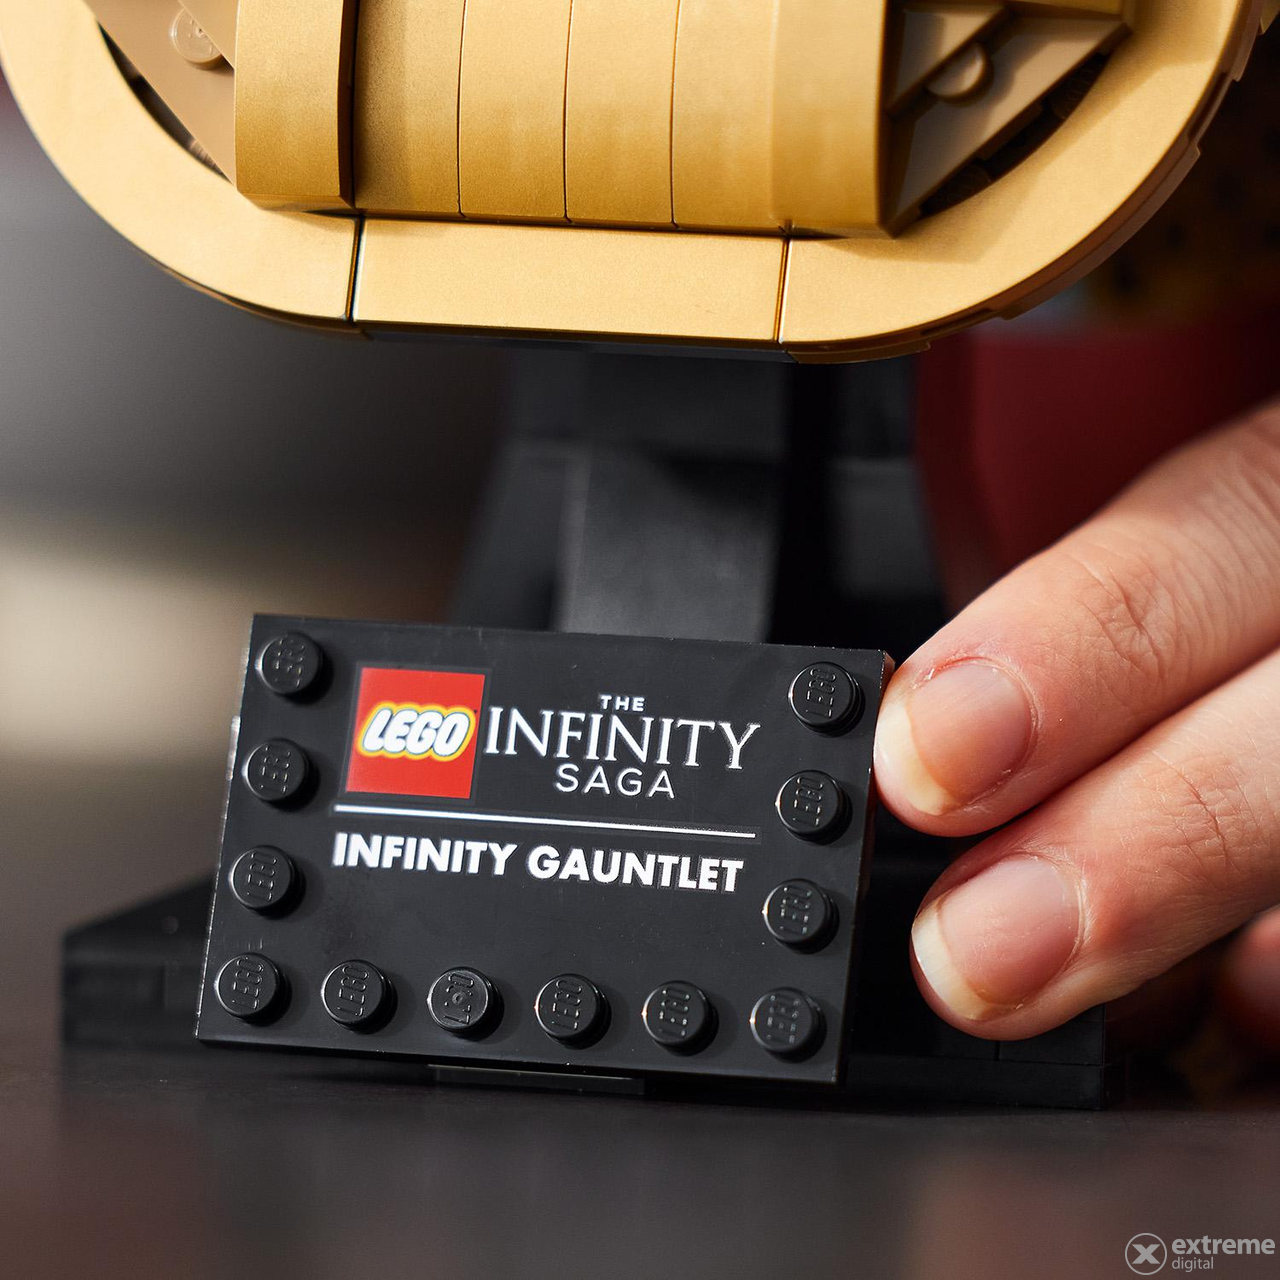 LEGO® Super Heroes 76191 Infinity Gauntlet